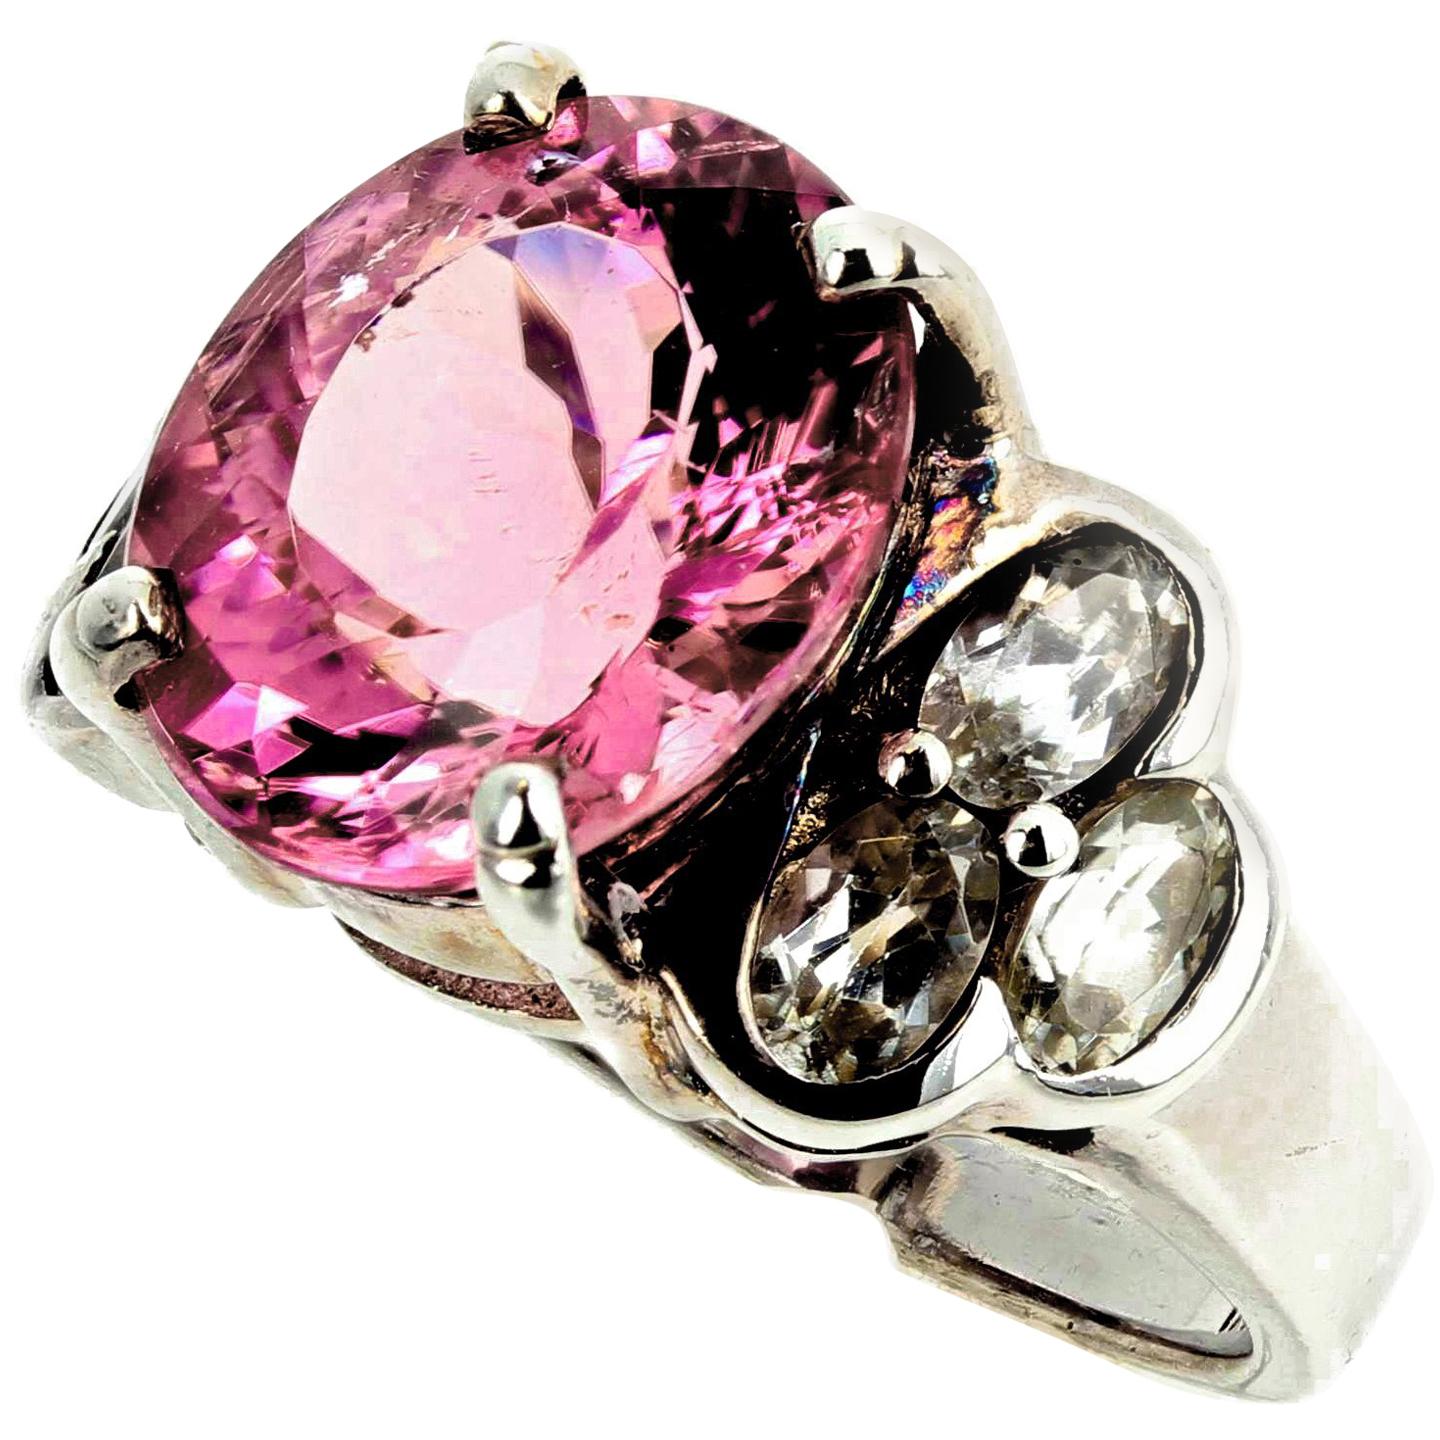 Magnifique bague en argent AJD avec tourmaline rose scintillante de 4 carats et quartz argent